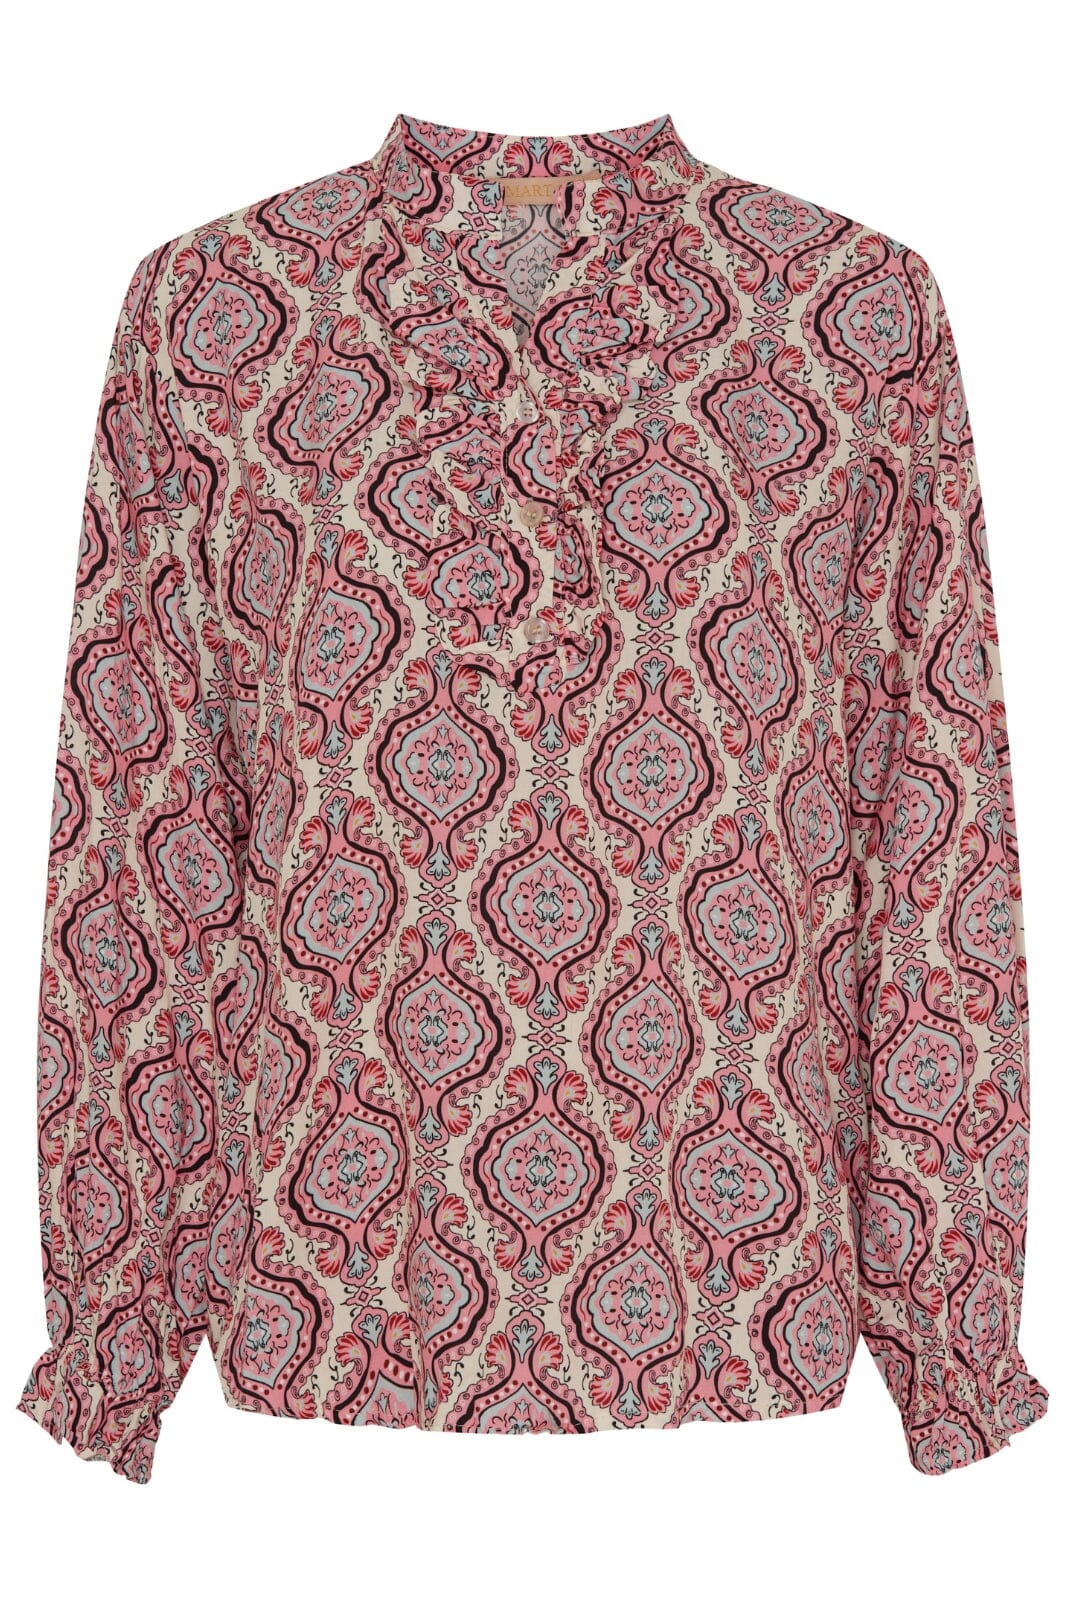 Marta Du Chateau - Mdcaya Shirt - 1405 Rosa Skjorter 